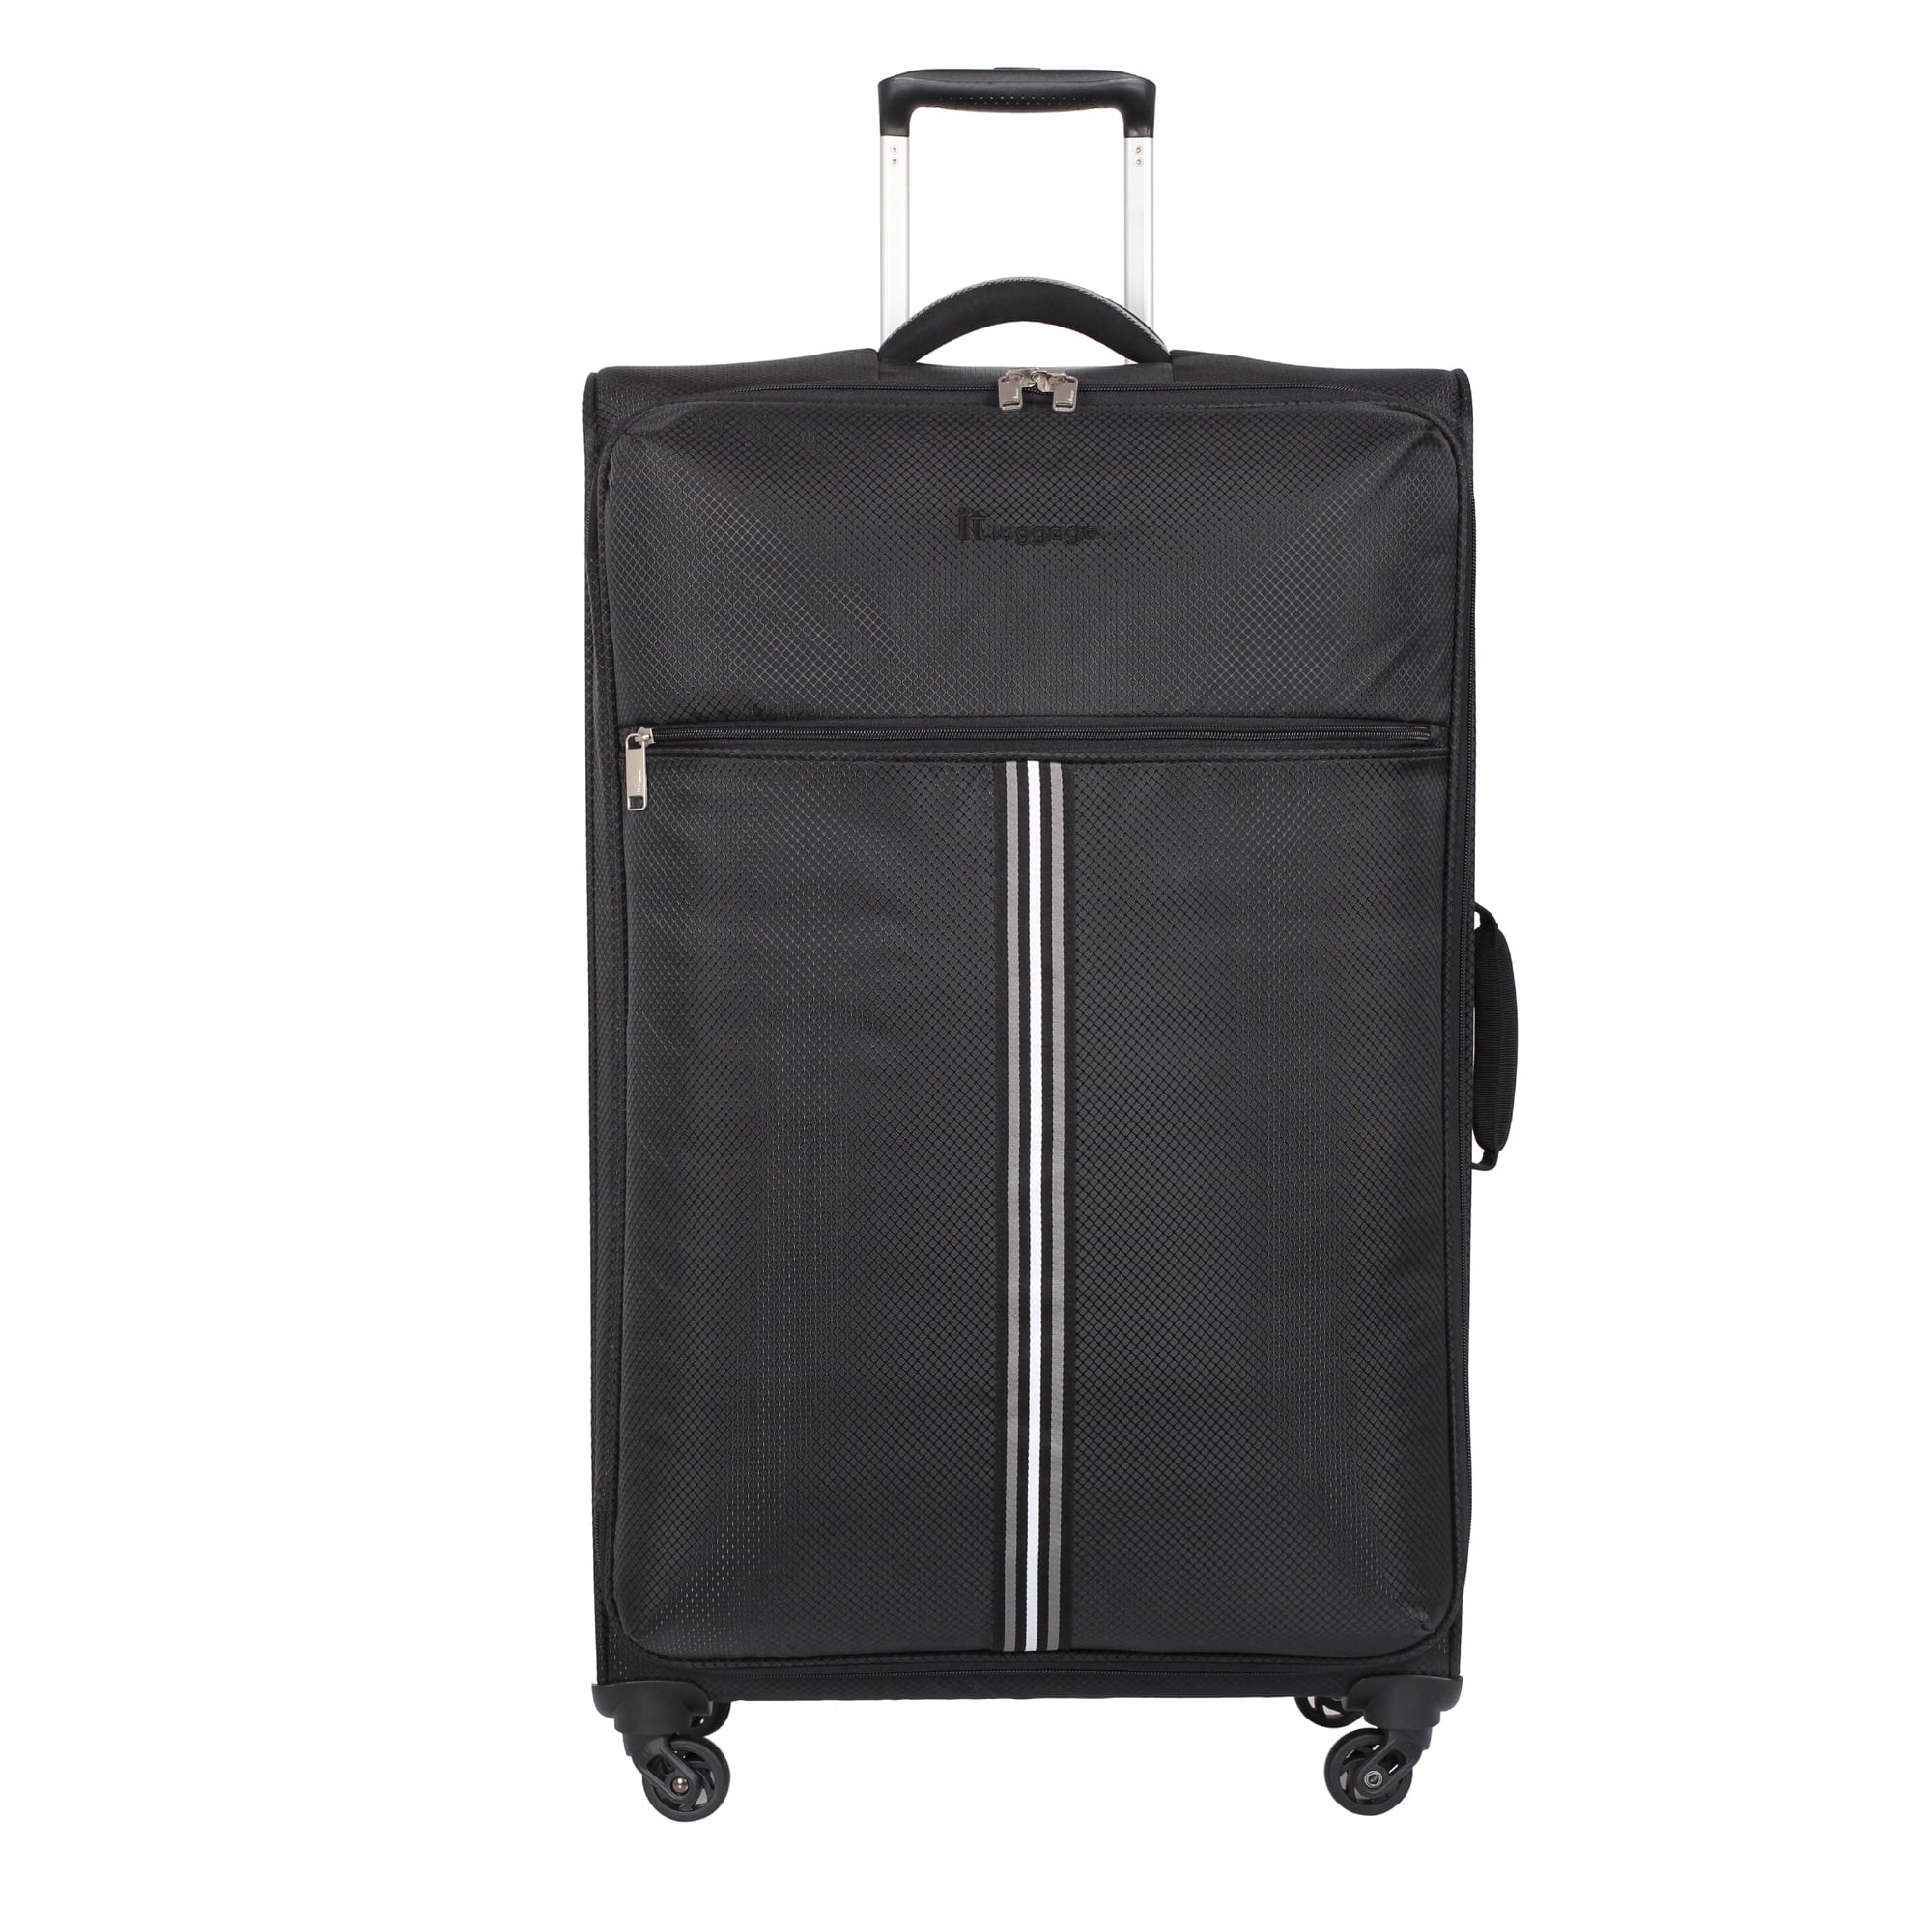 Hyderabadi Black Cotton Luggage Bag, Size/Dimension: 22x11.5x11.5inch